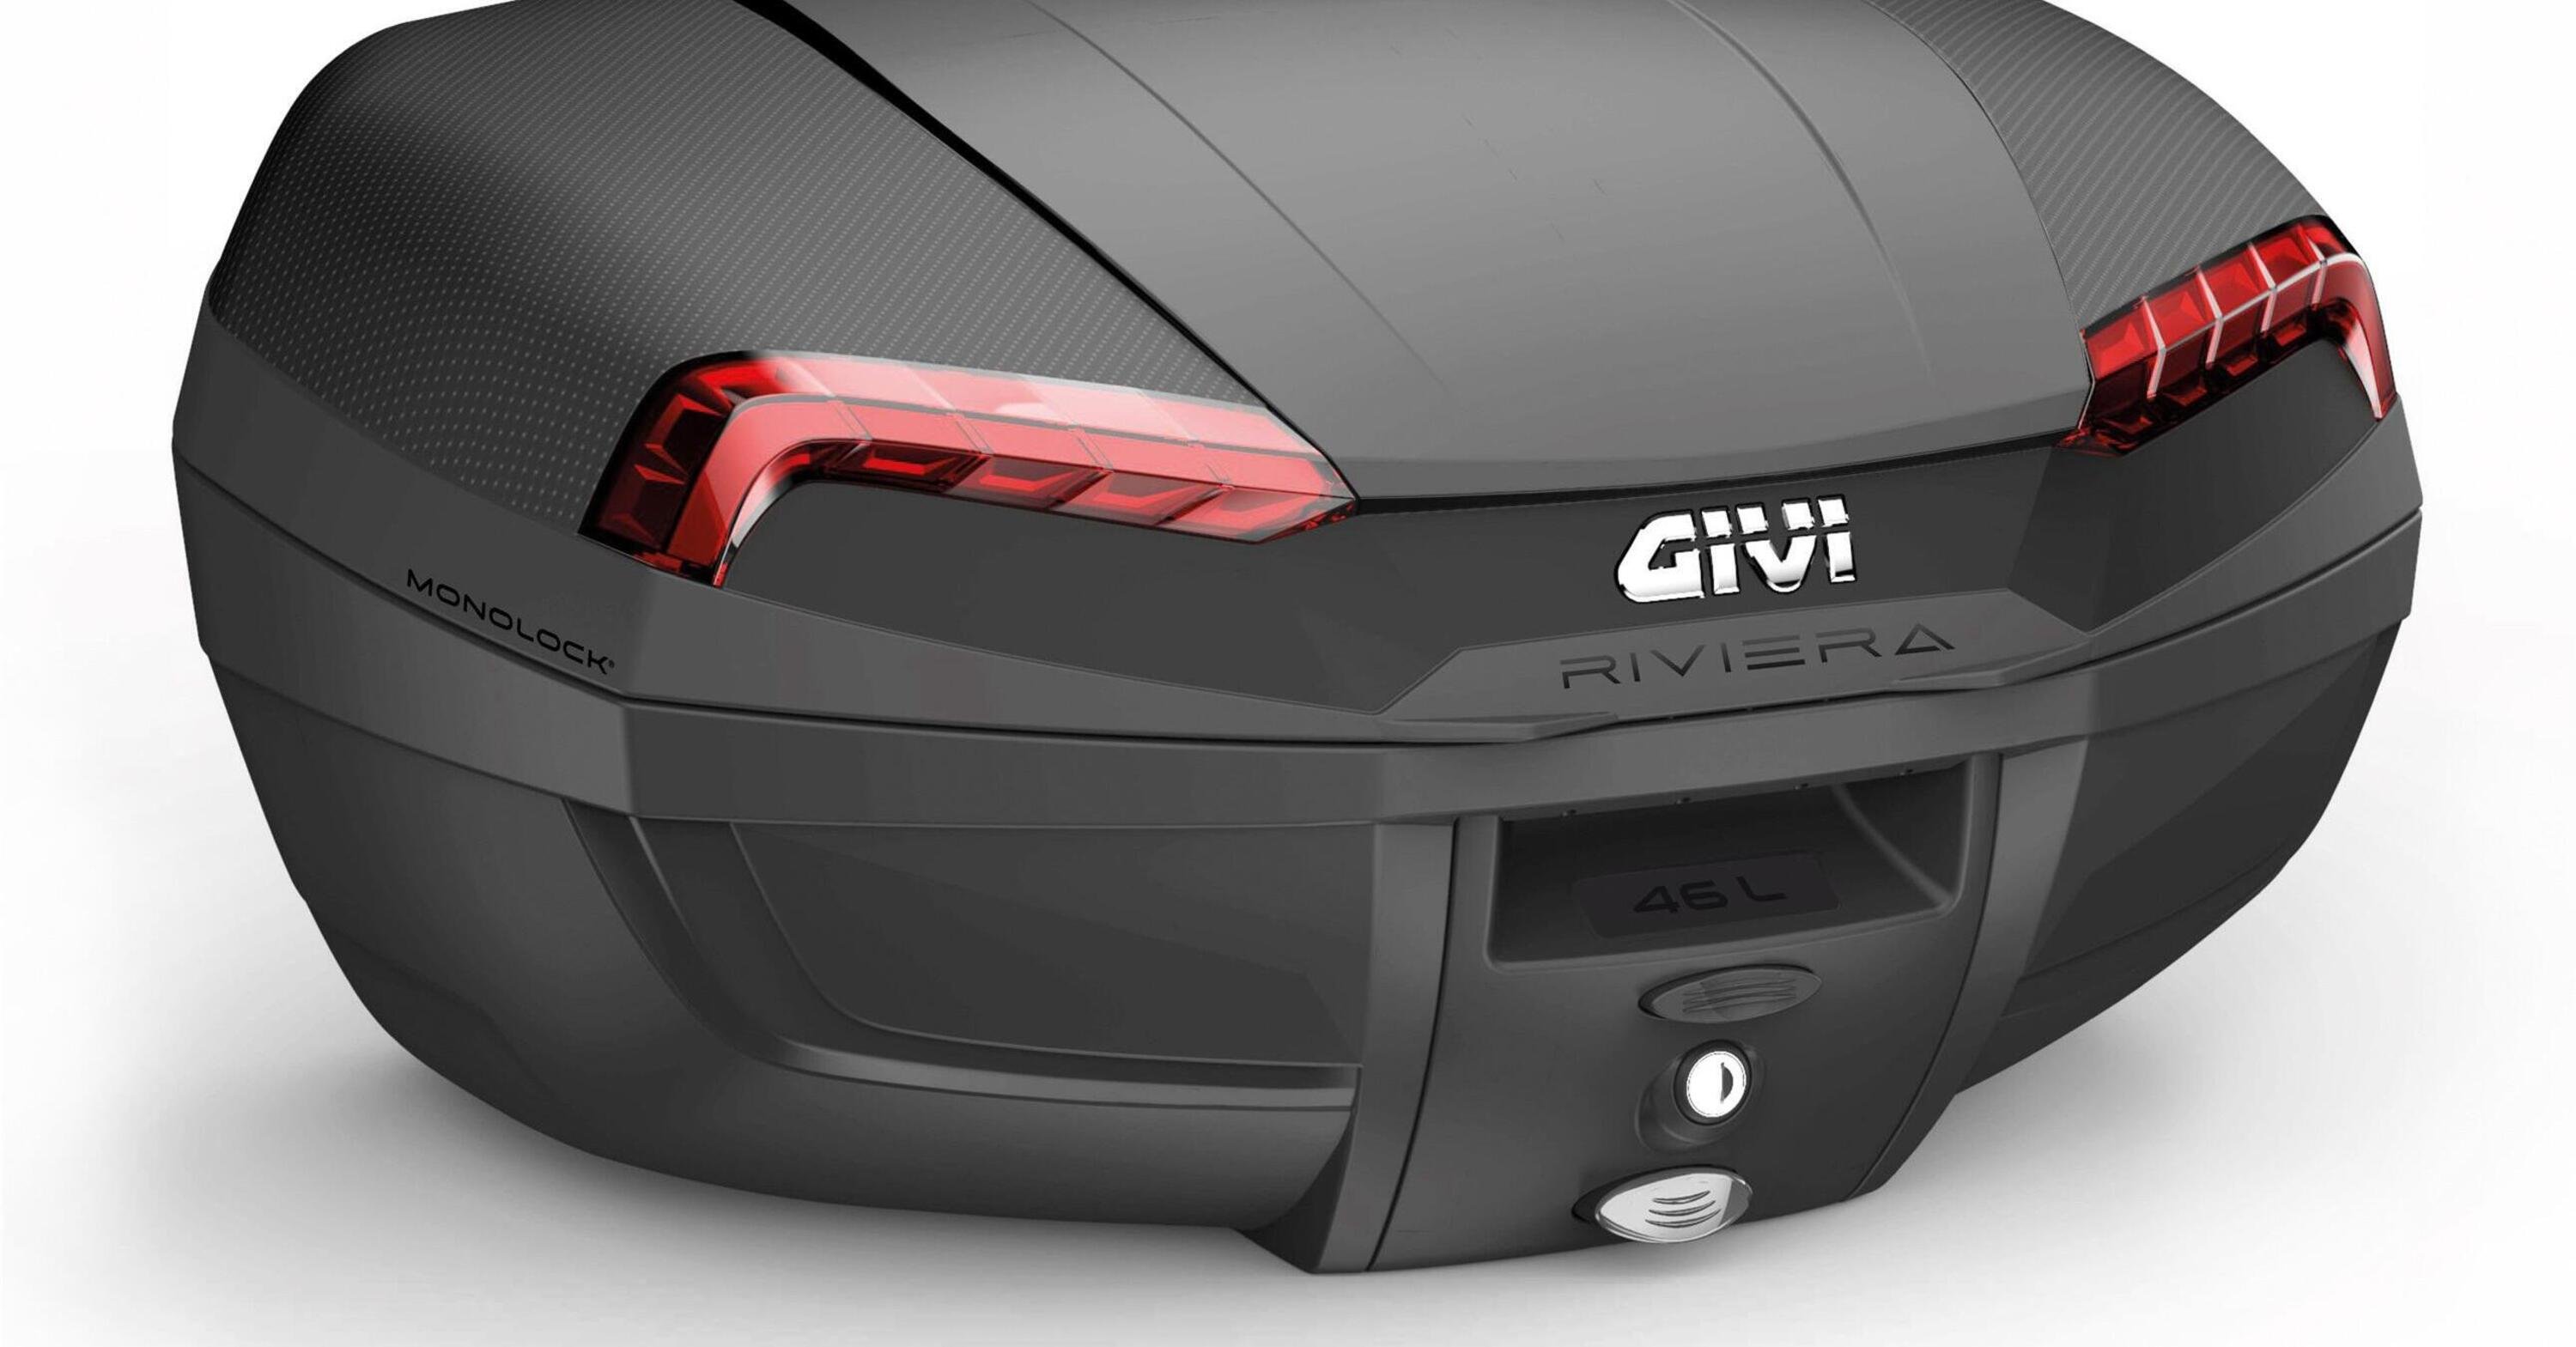 GIVI presenta il top case E46 Riviera